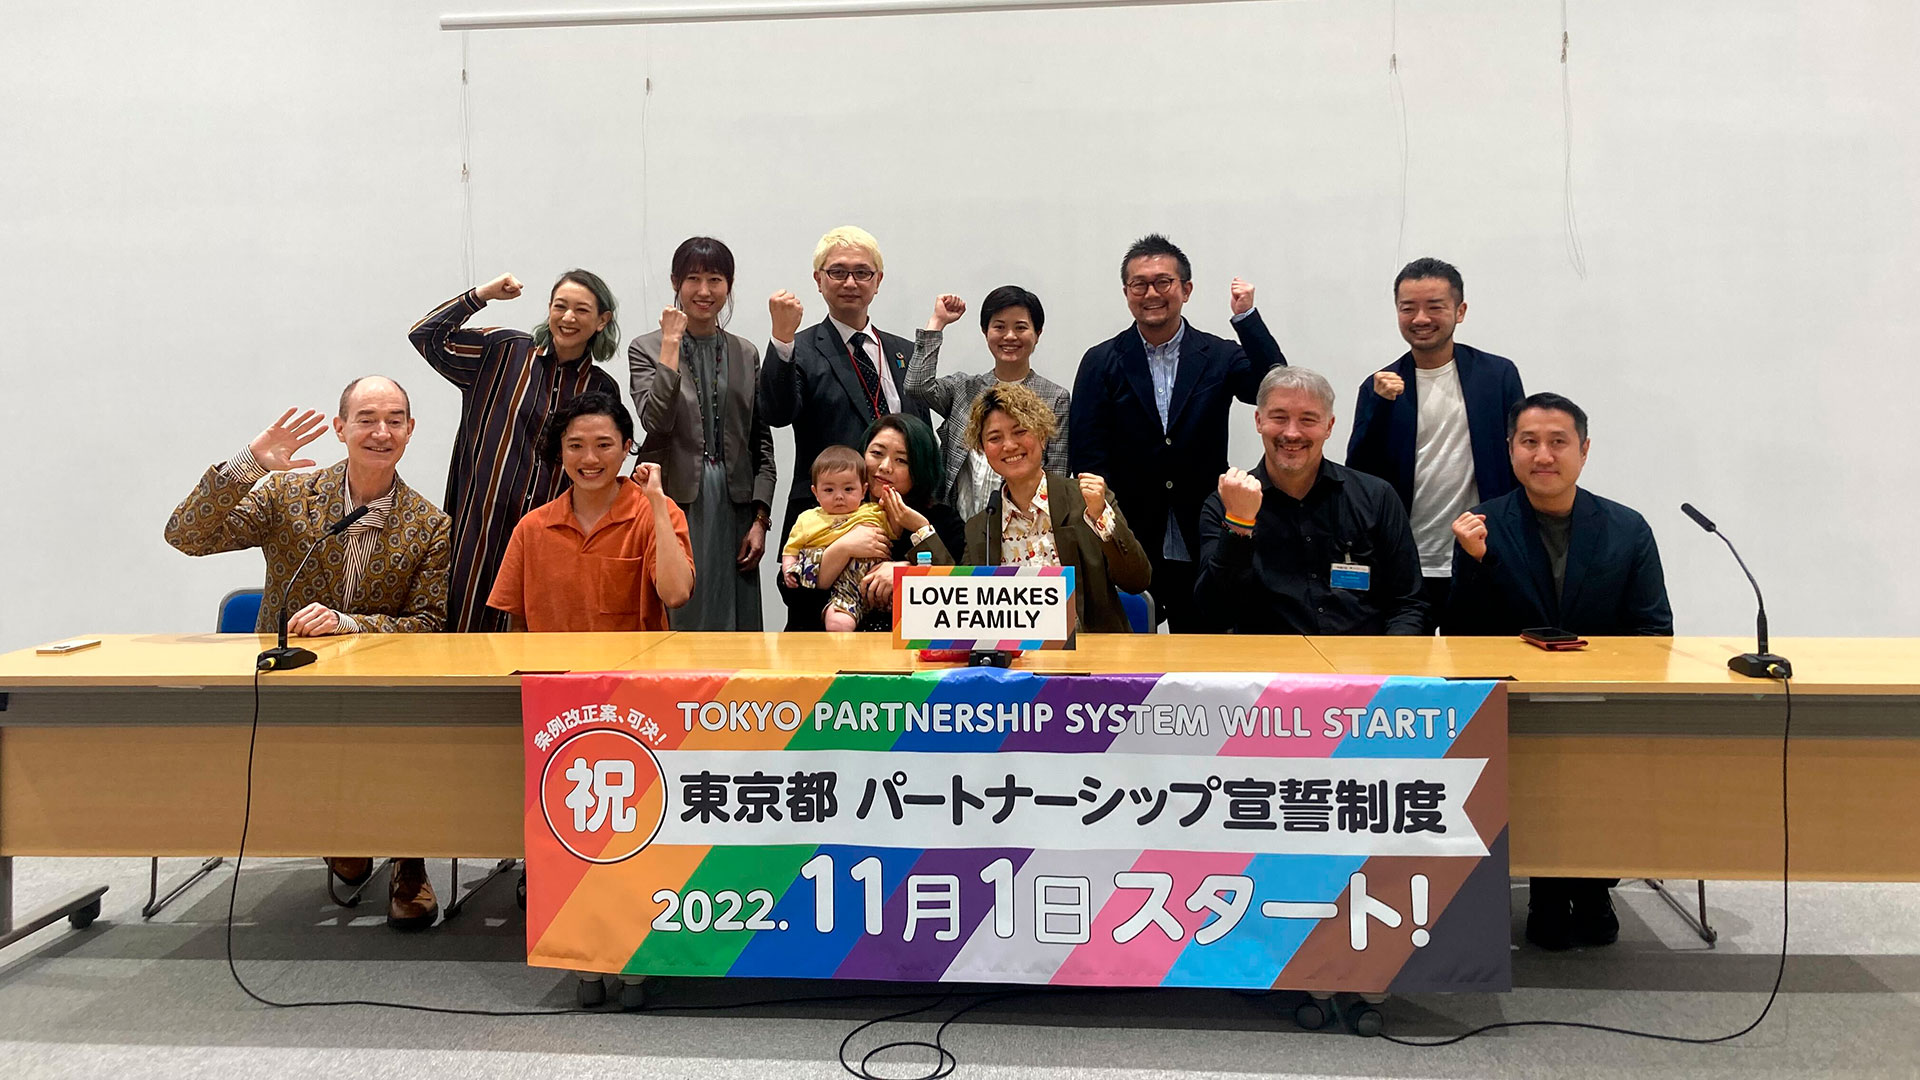 Activistas LGBT+ en Tokio tras conferencia de prensa celebrando la aprobación de la unión civil entre personas del mismo sexo (Washington Post photo by Julia Mio Inuma)